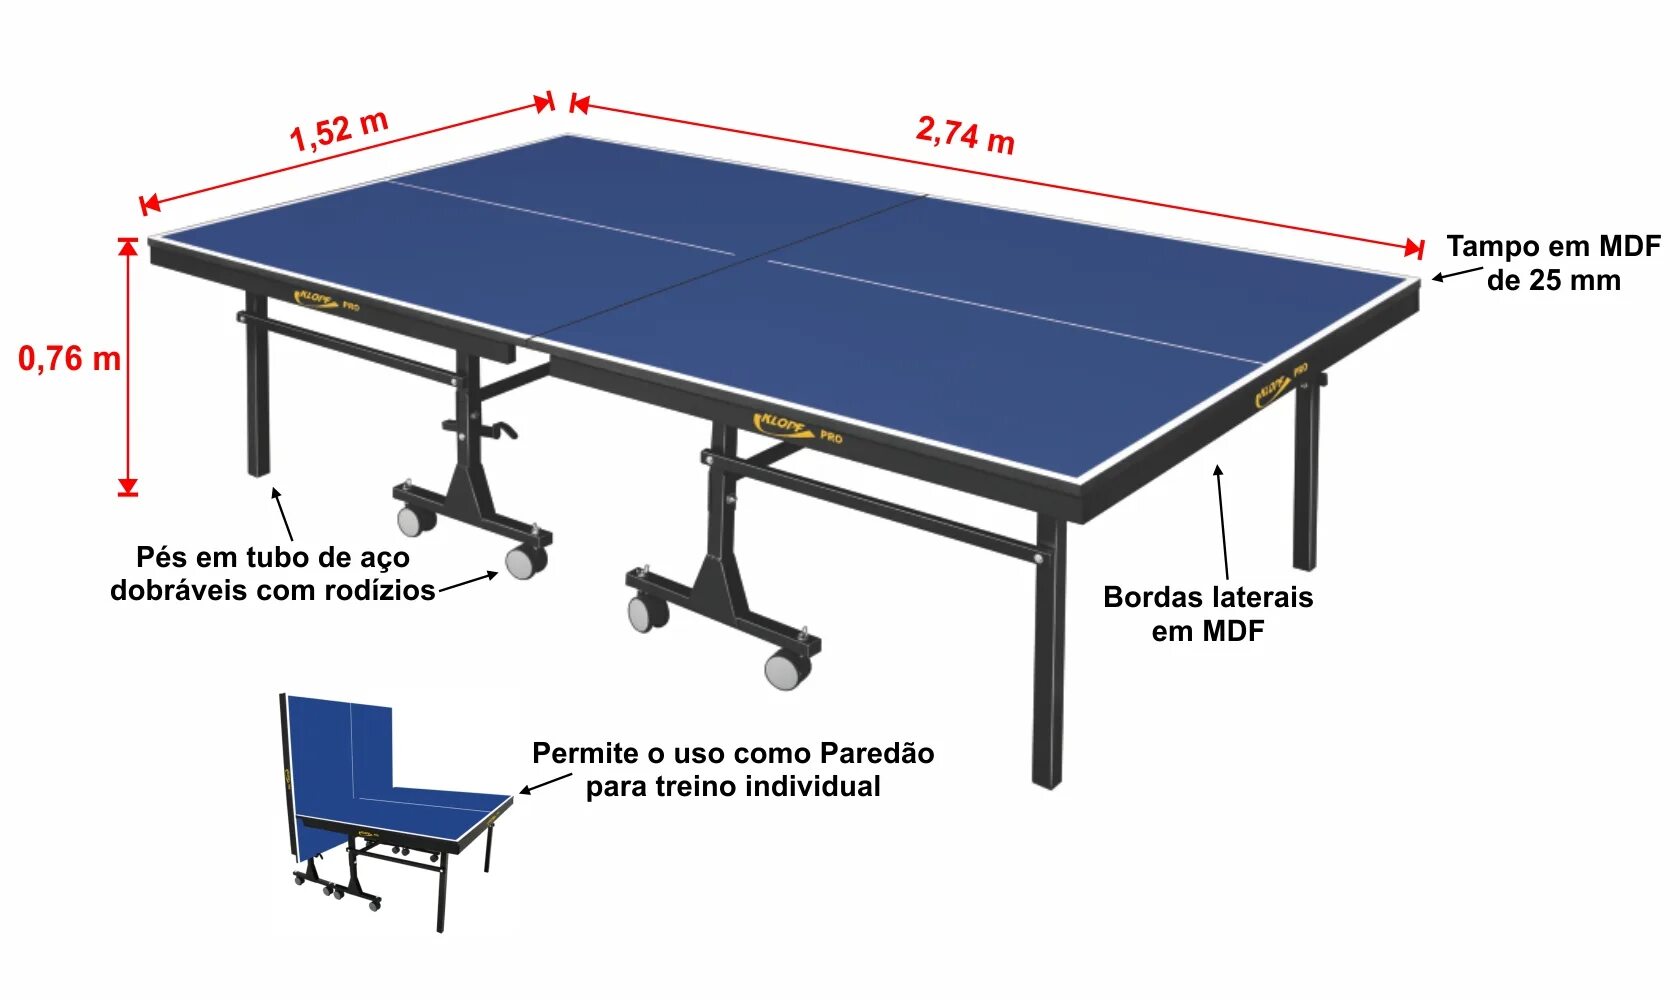 Стандартный размер теннисного. Высота теннисного стола для настольного тенниса. Размеры настольного теннисного стола стандарт. Габариты теннисного стола настольного тенниса. Параметры теннисного стола стандарт.